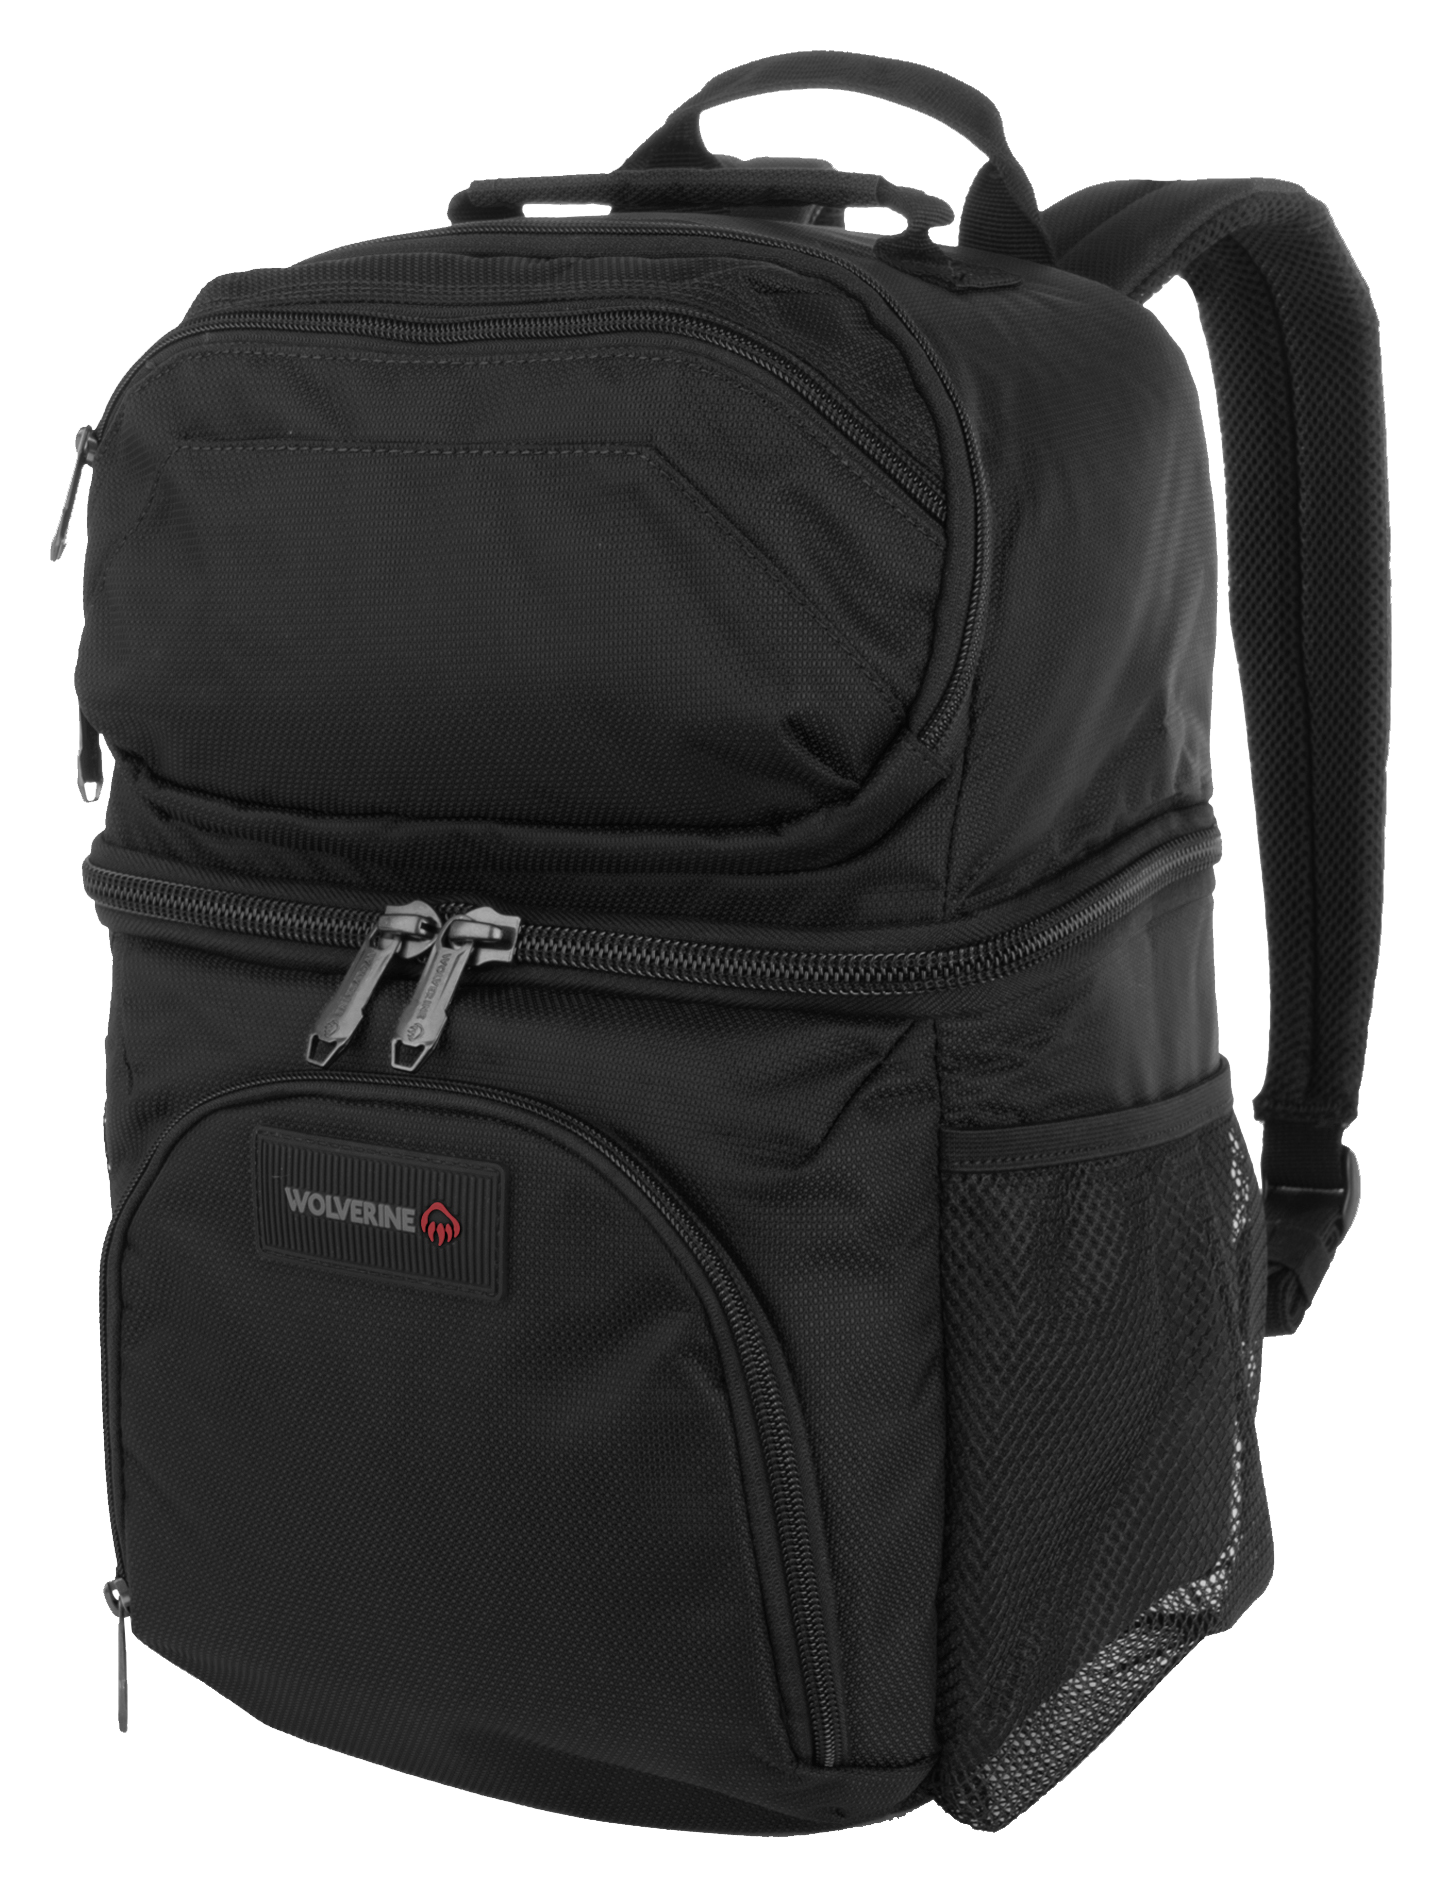 Wolverine 18-Can Cooler Backpack - Black